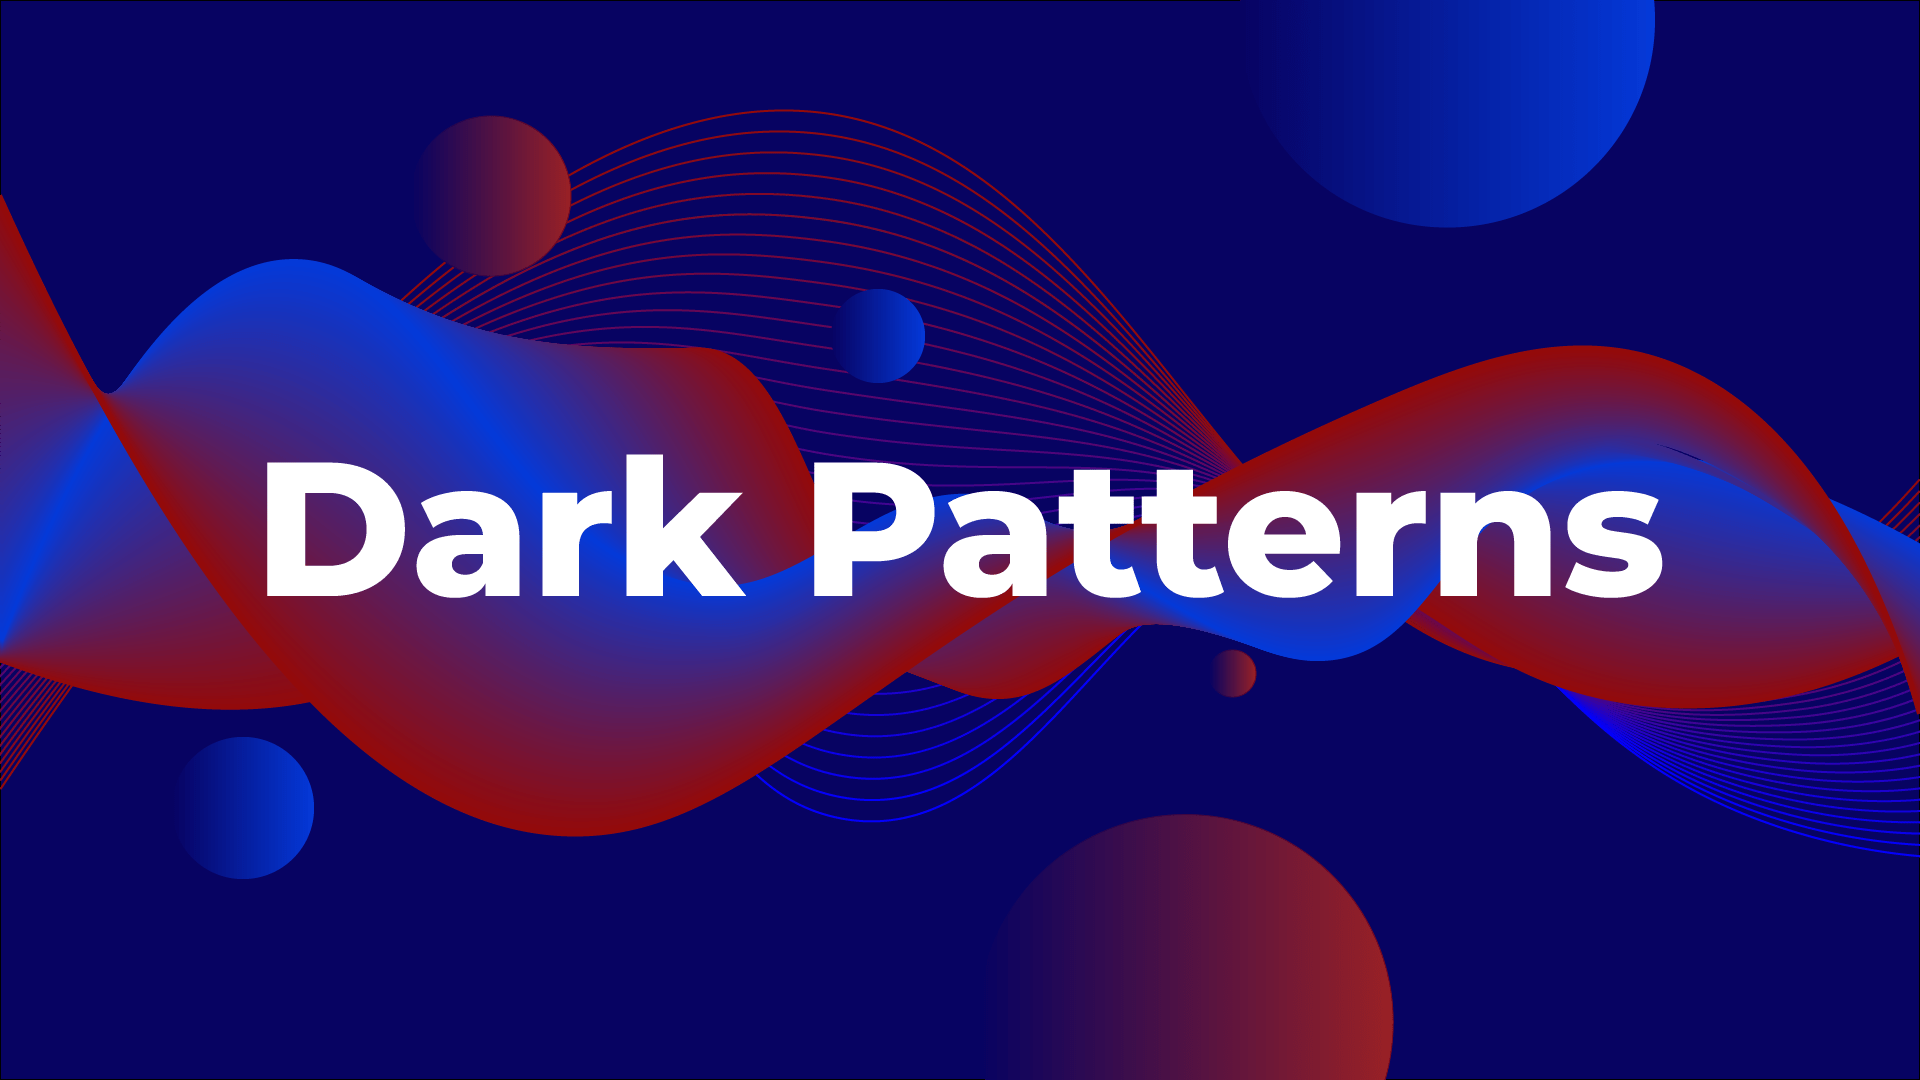 Dark Patterns in UX